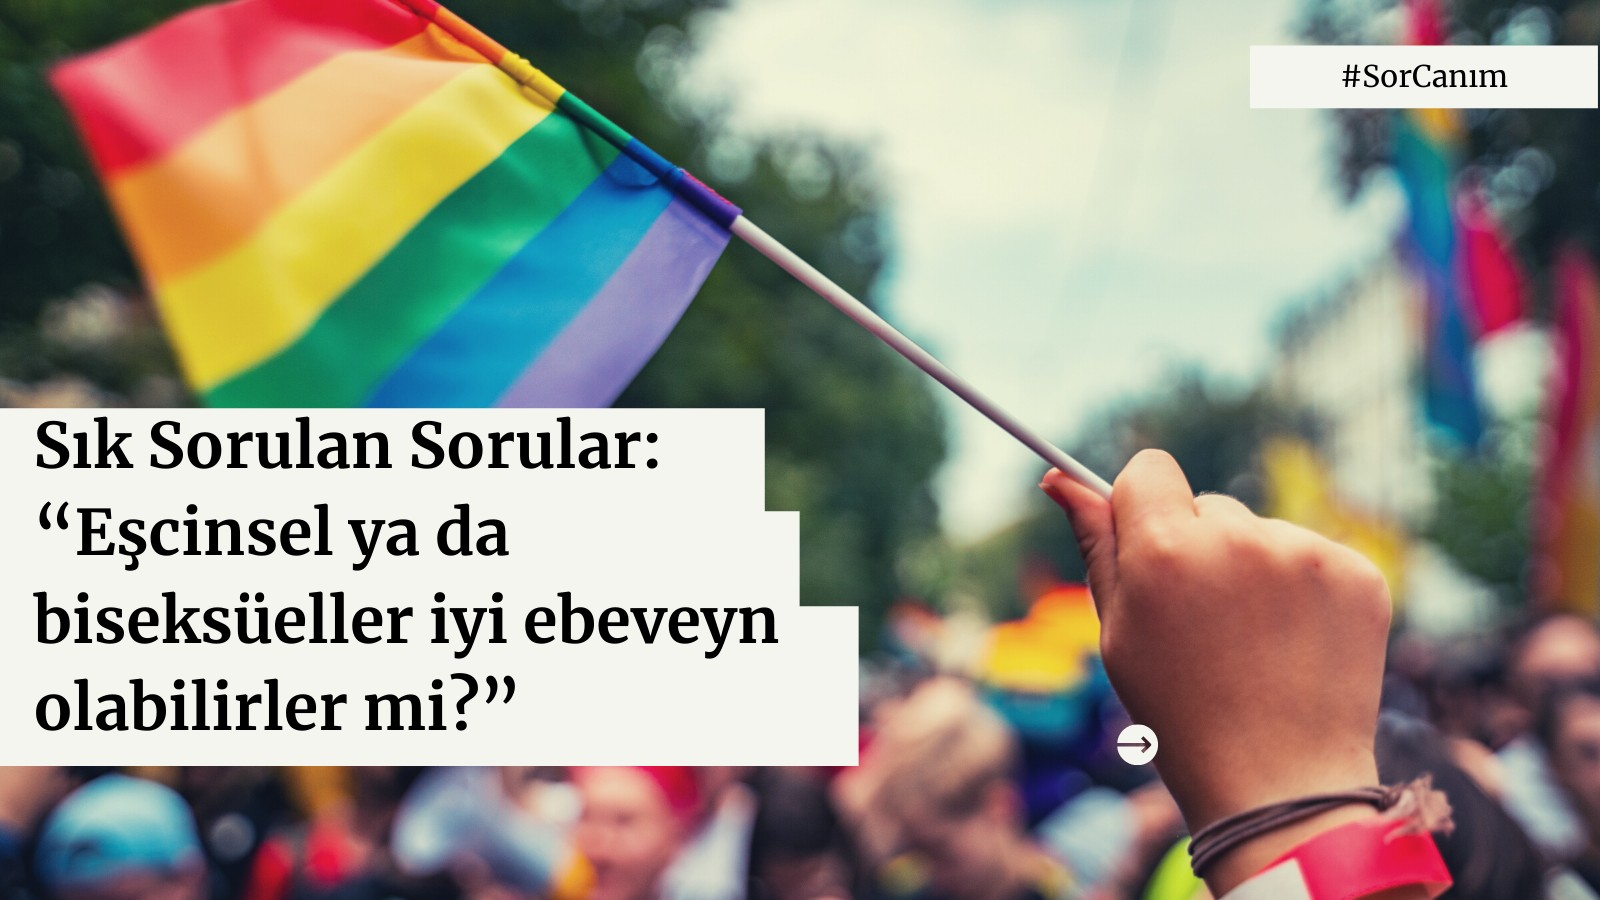 Sor Canım: “Eşcinsel ya da biseksüeller iyi ebeveyn olabilirler mi?” | Kaos GL - LGBTİ+ Haber Portalı